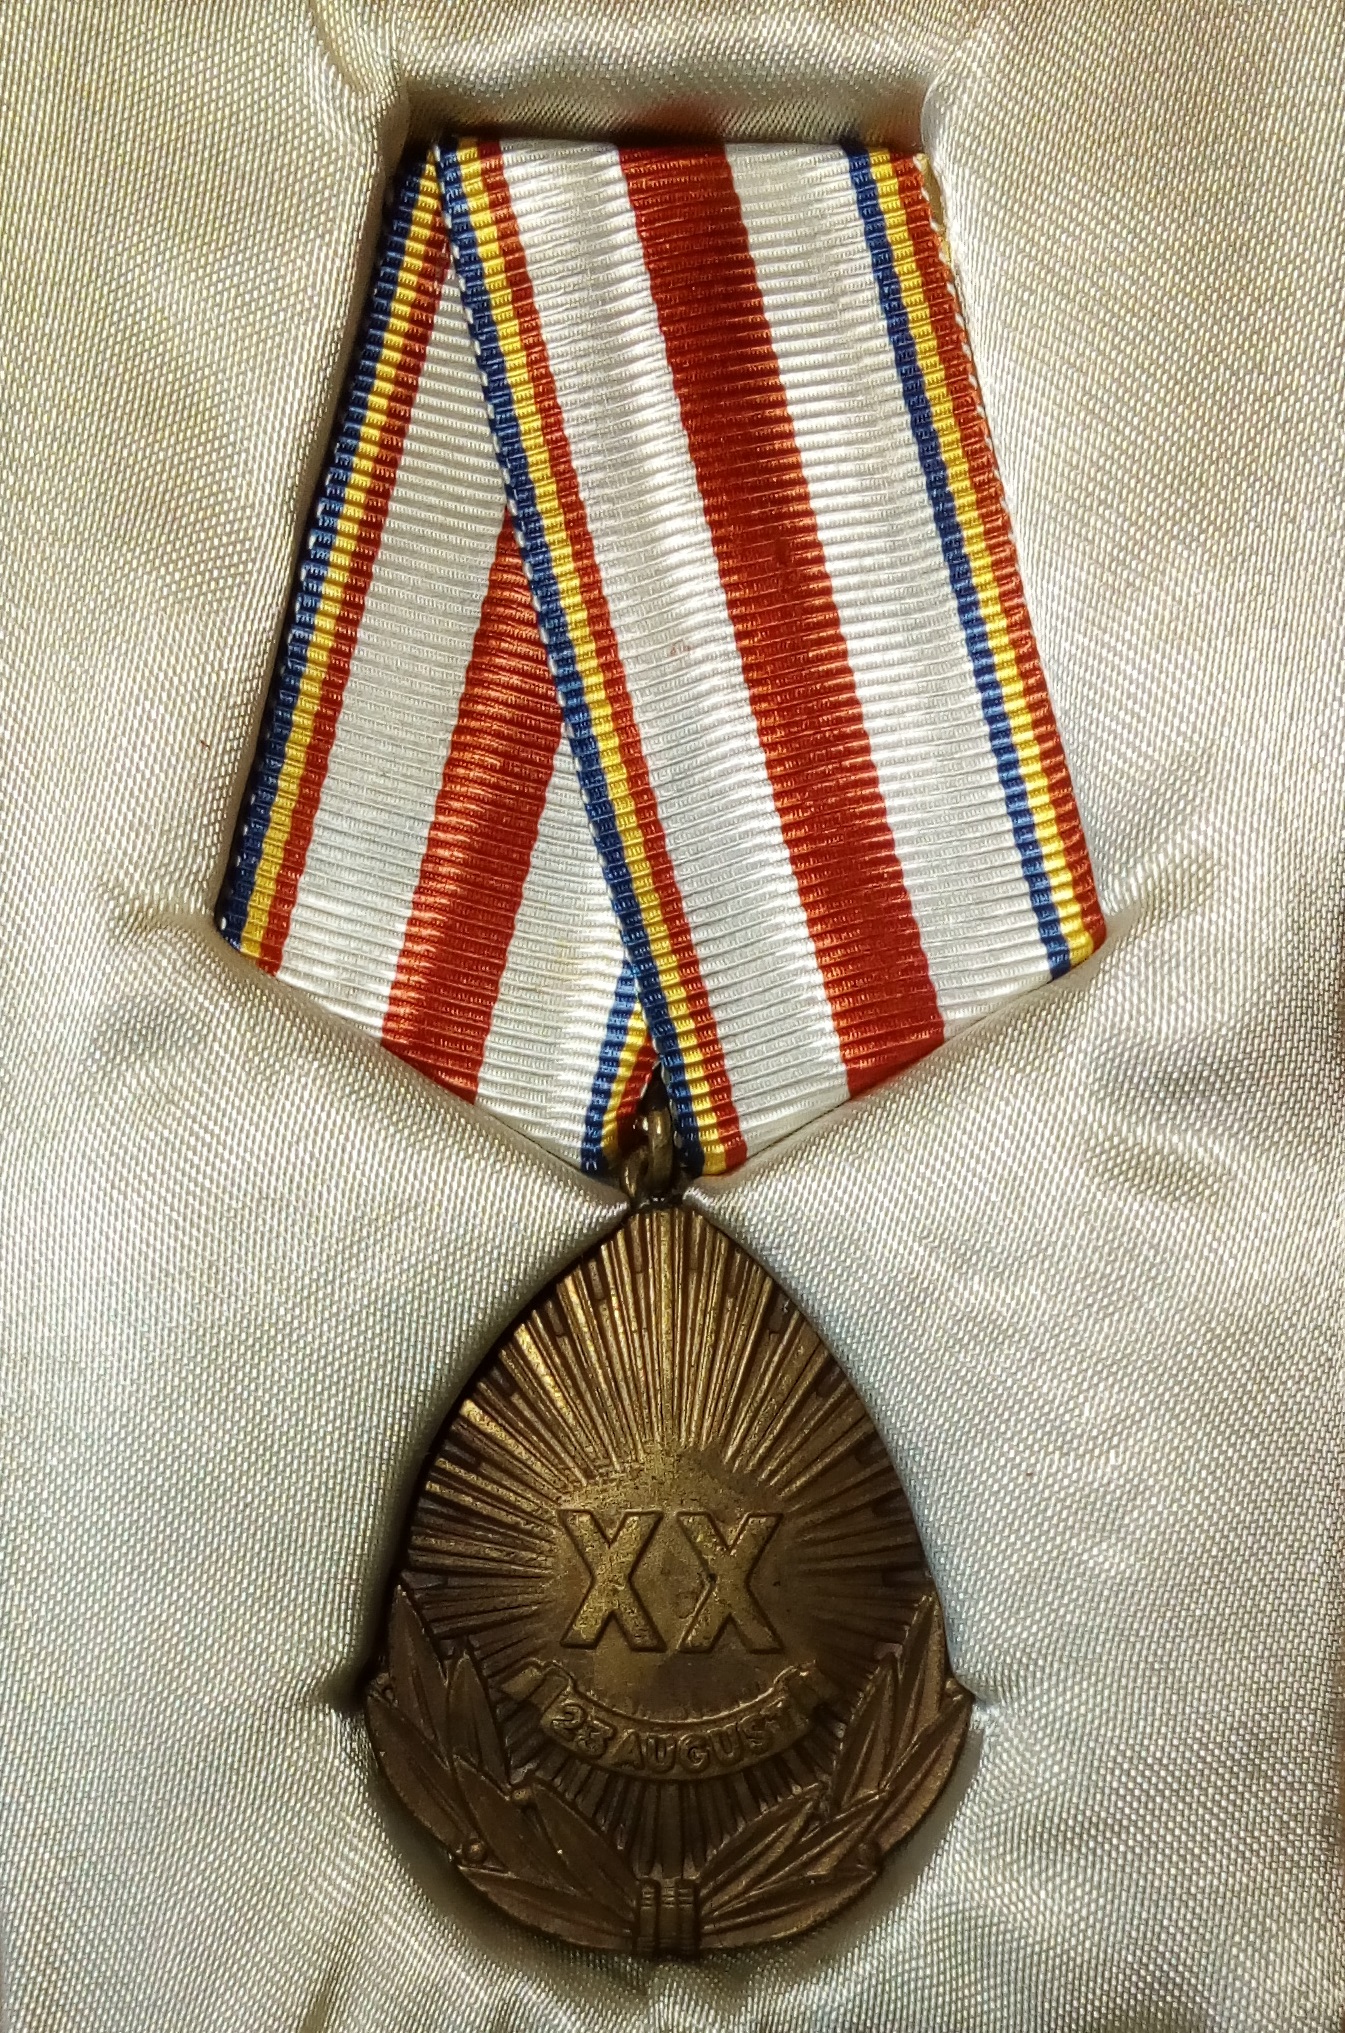 Medalia a XX-a aniversare a eliberarii Patriei